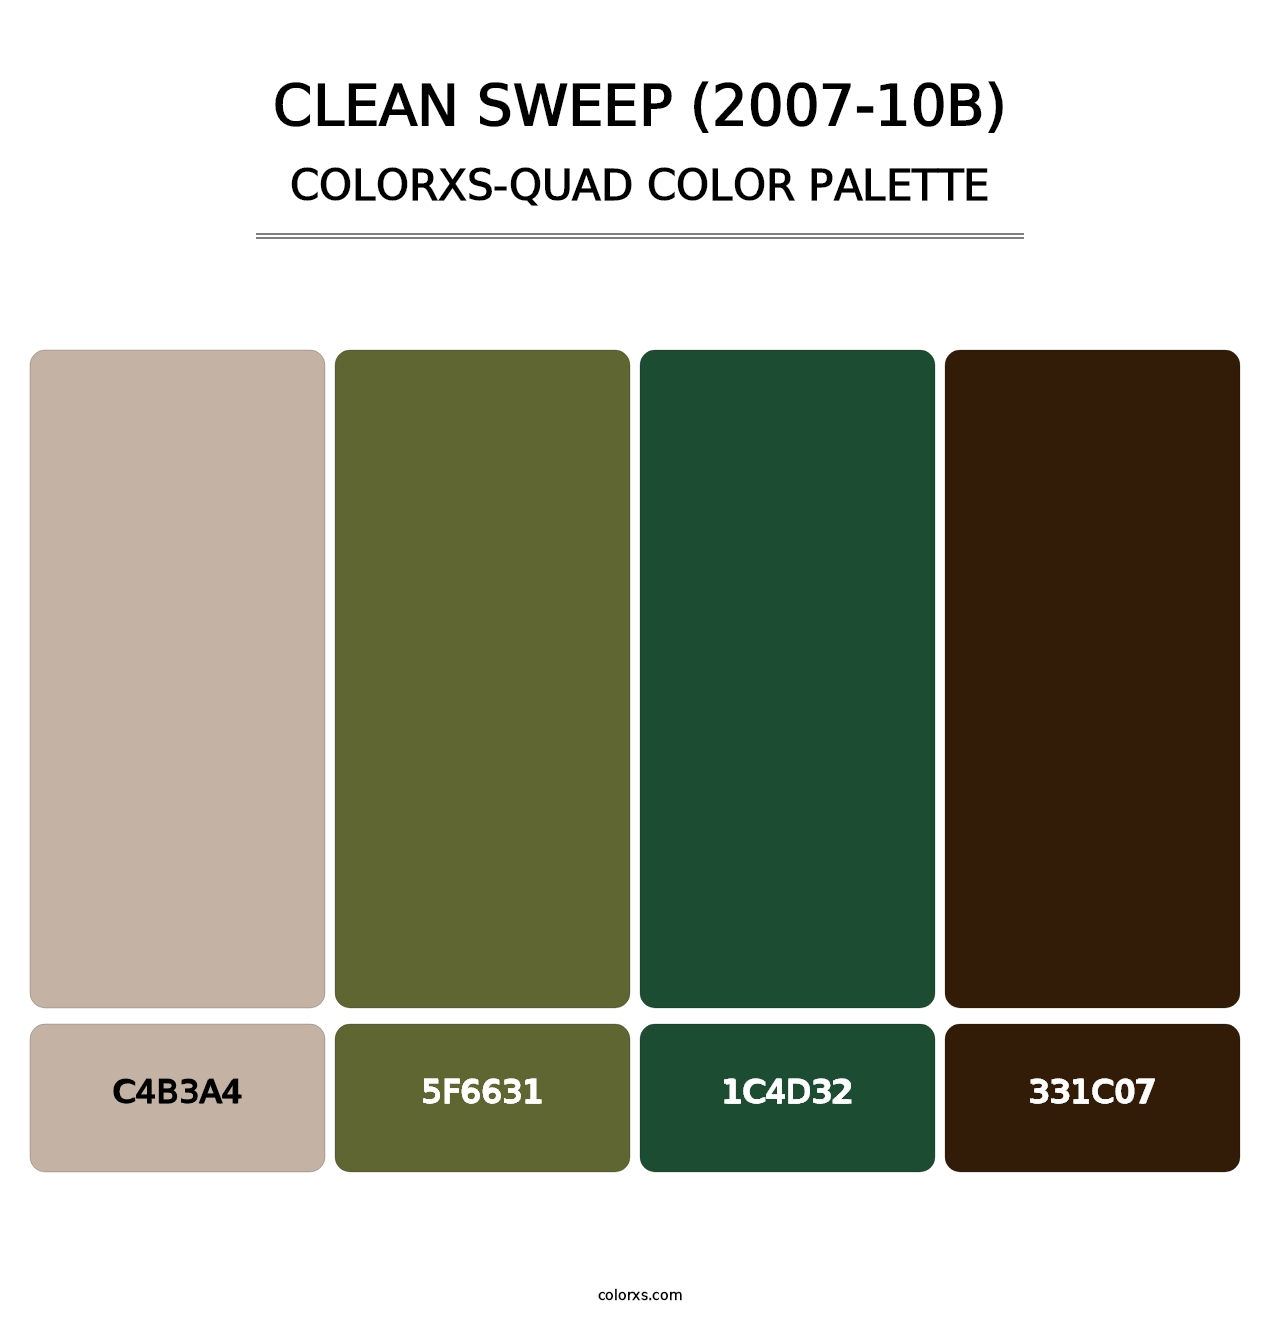 Clean Sweep (2007-10B) - Colorxs Quad Palette